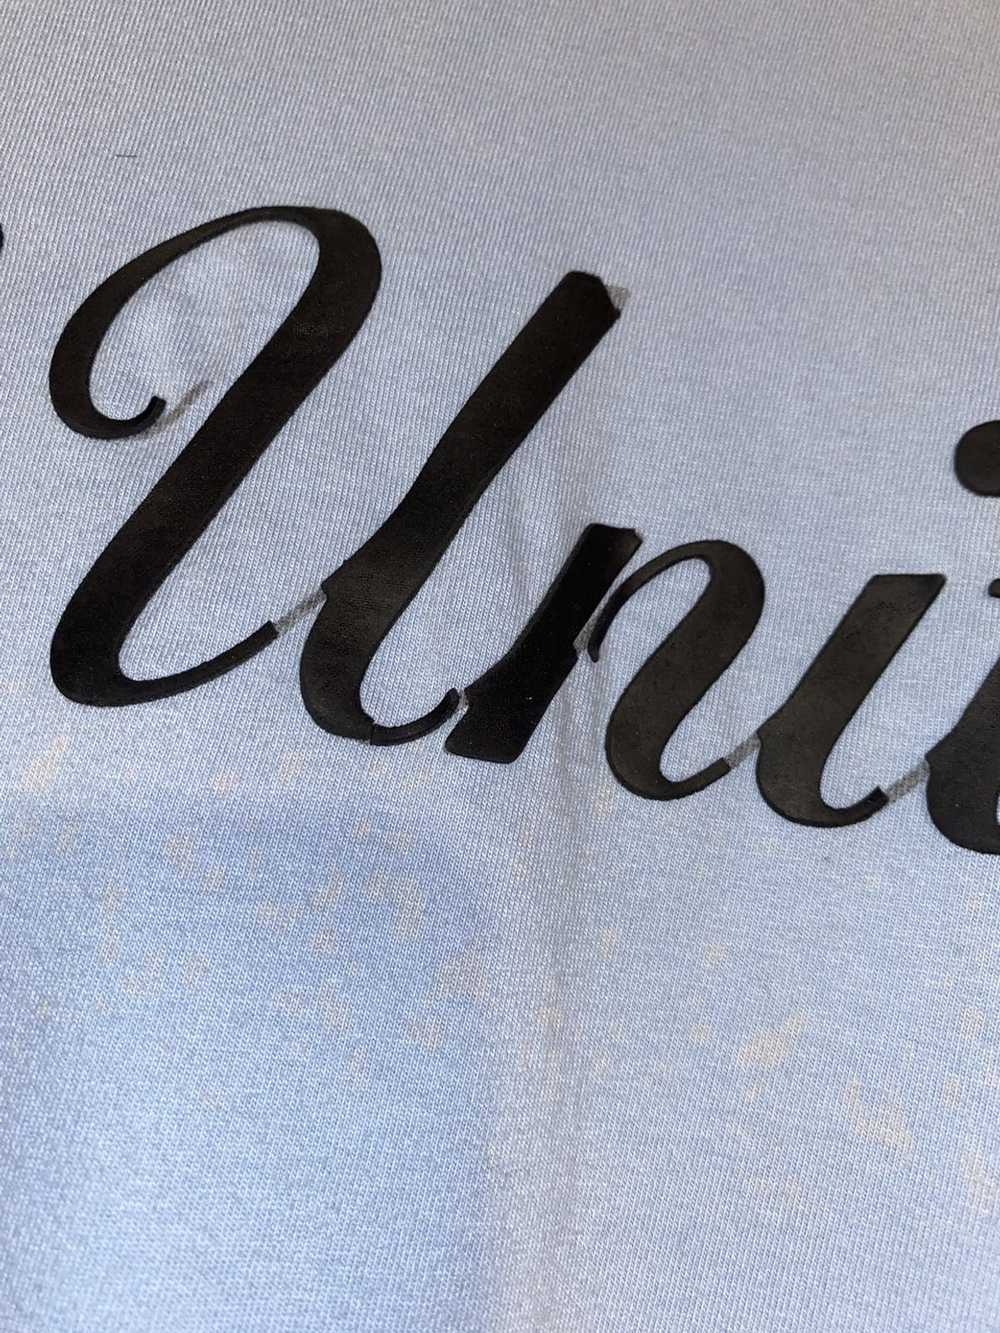 G Unit × Streetwear × Vintage G unit T Shirt - image 4